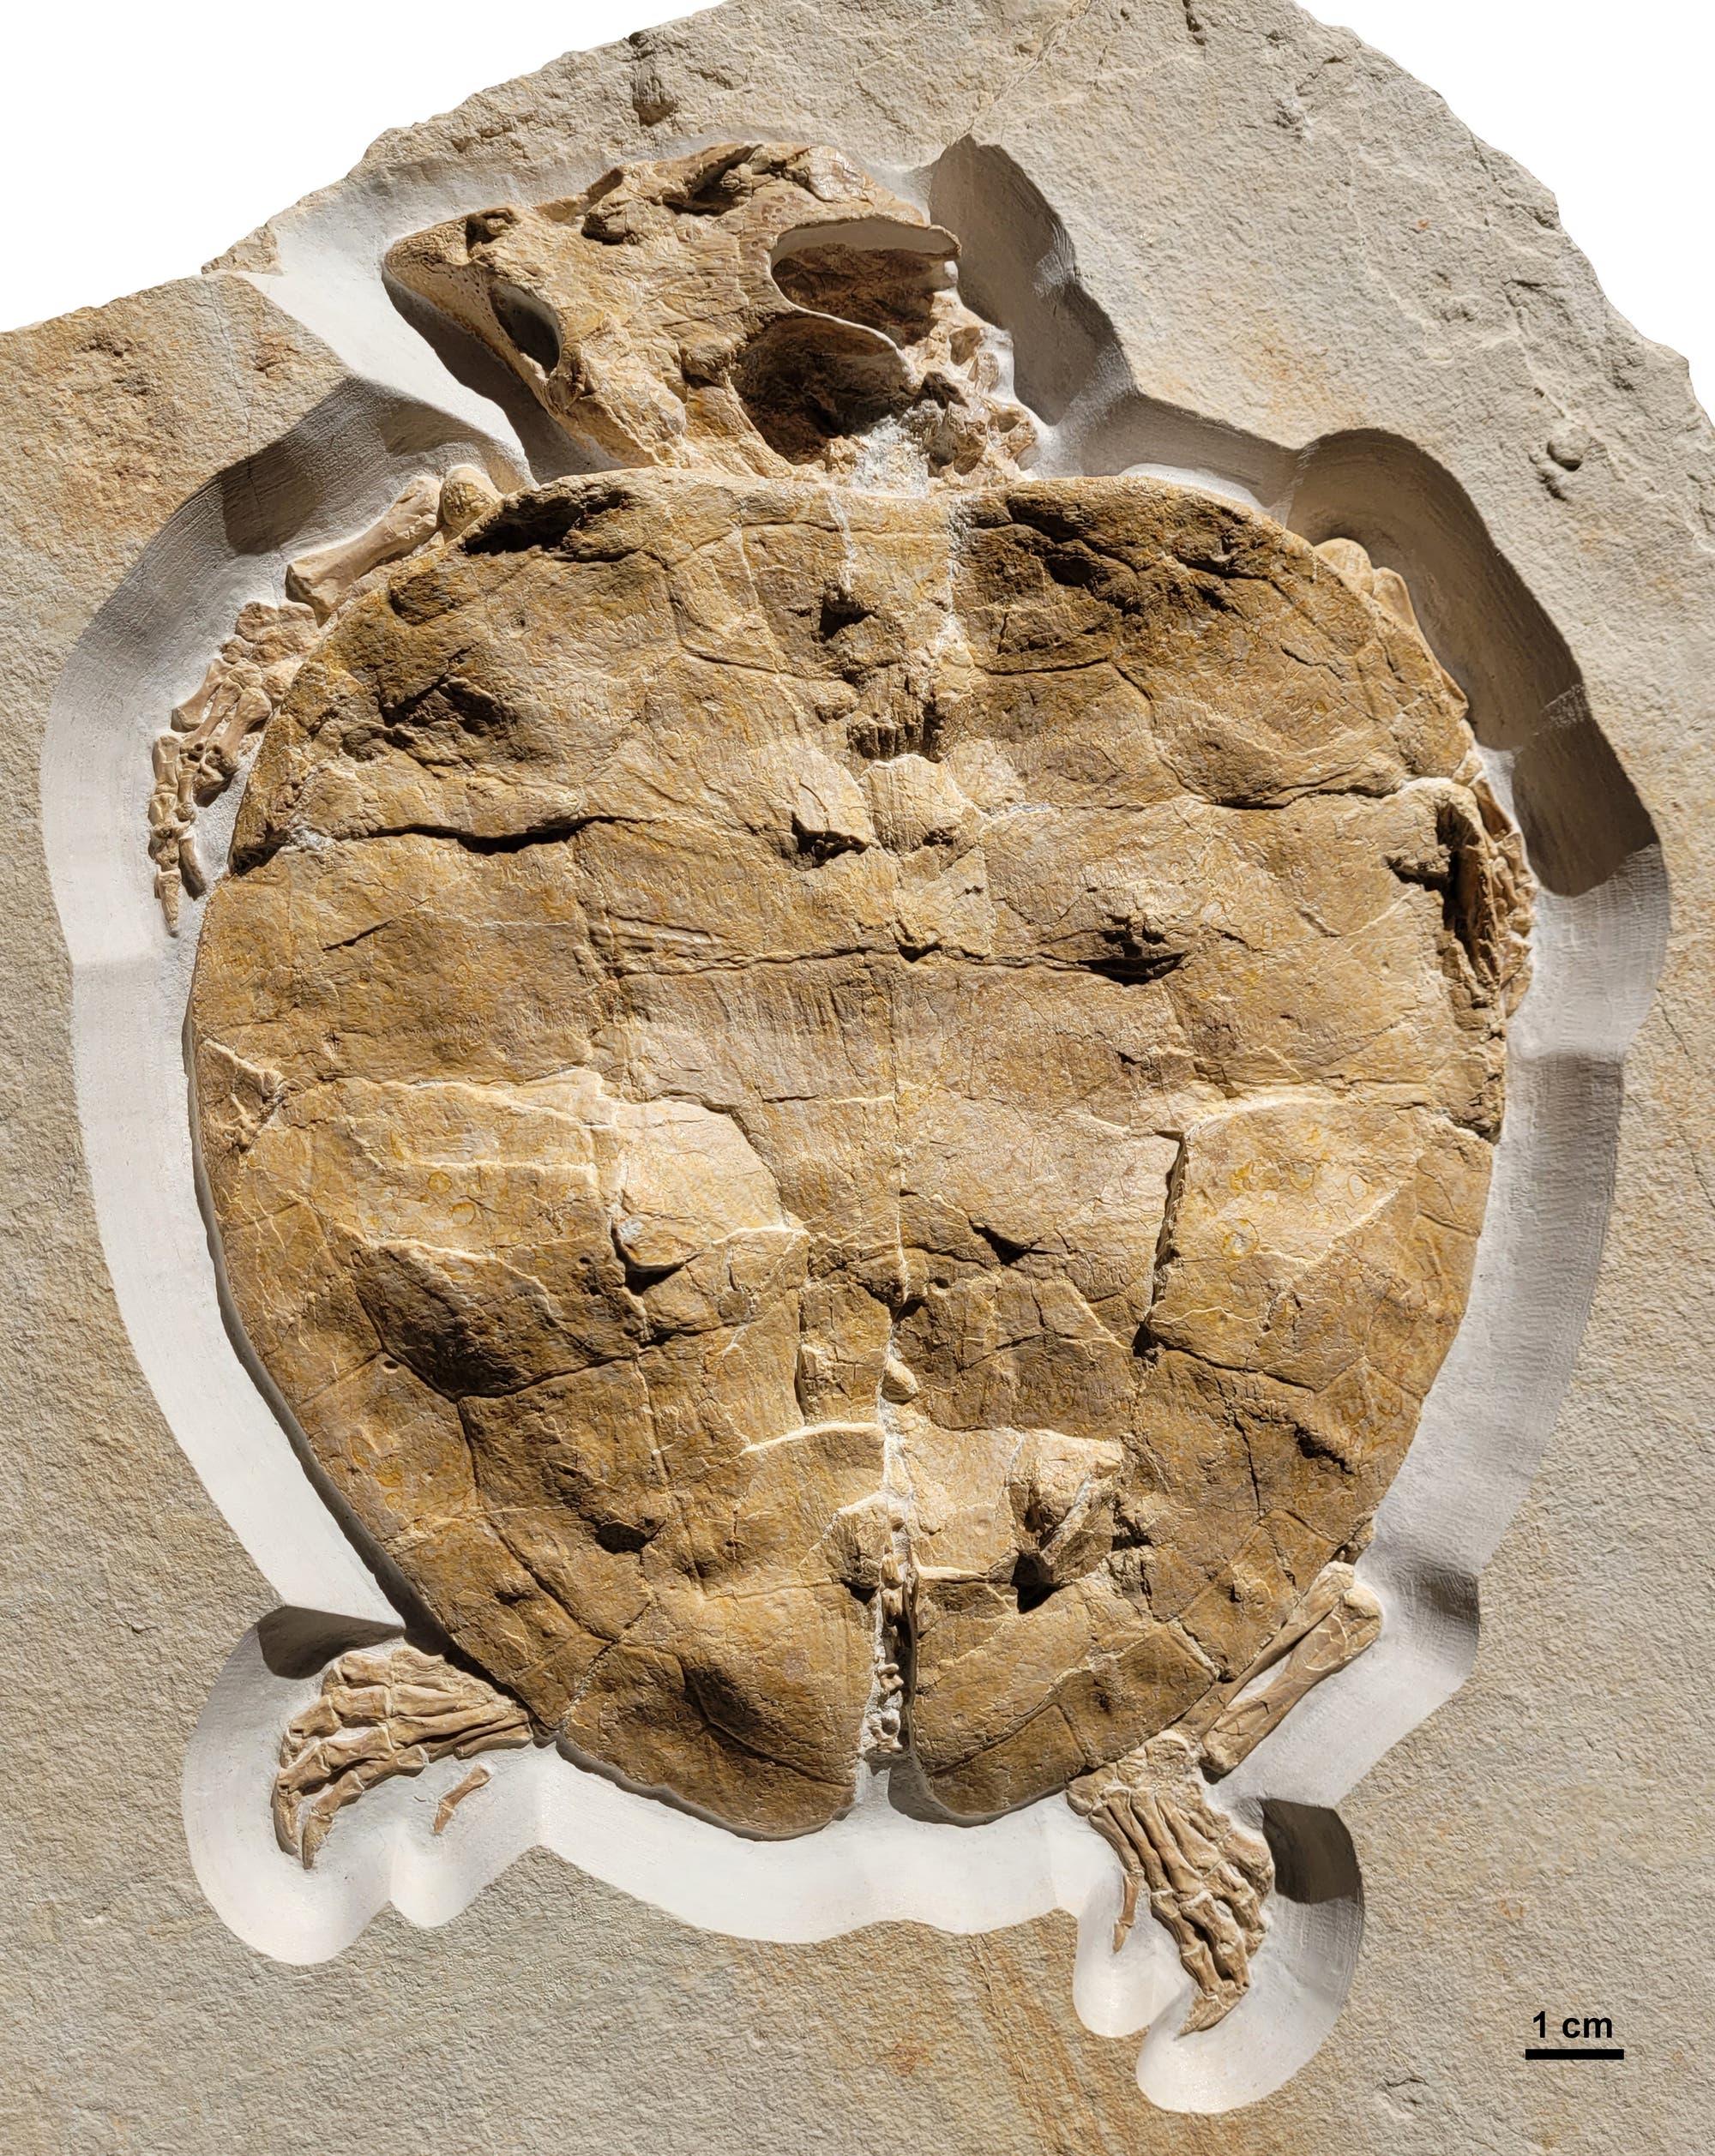 Das Fossil von Solnhofia parsonsi.